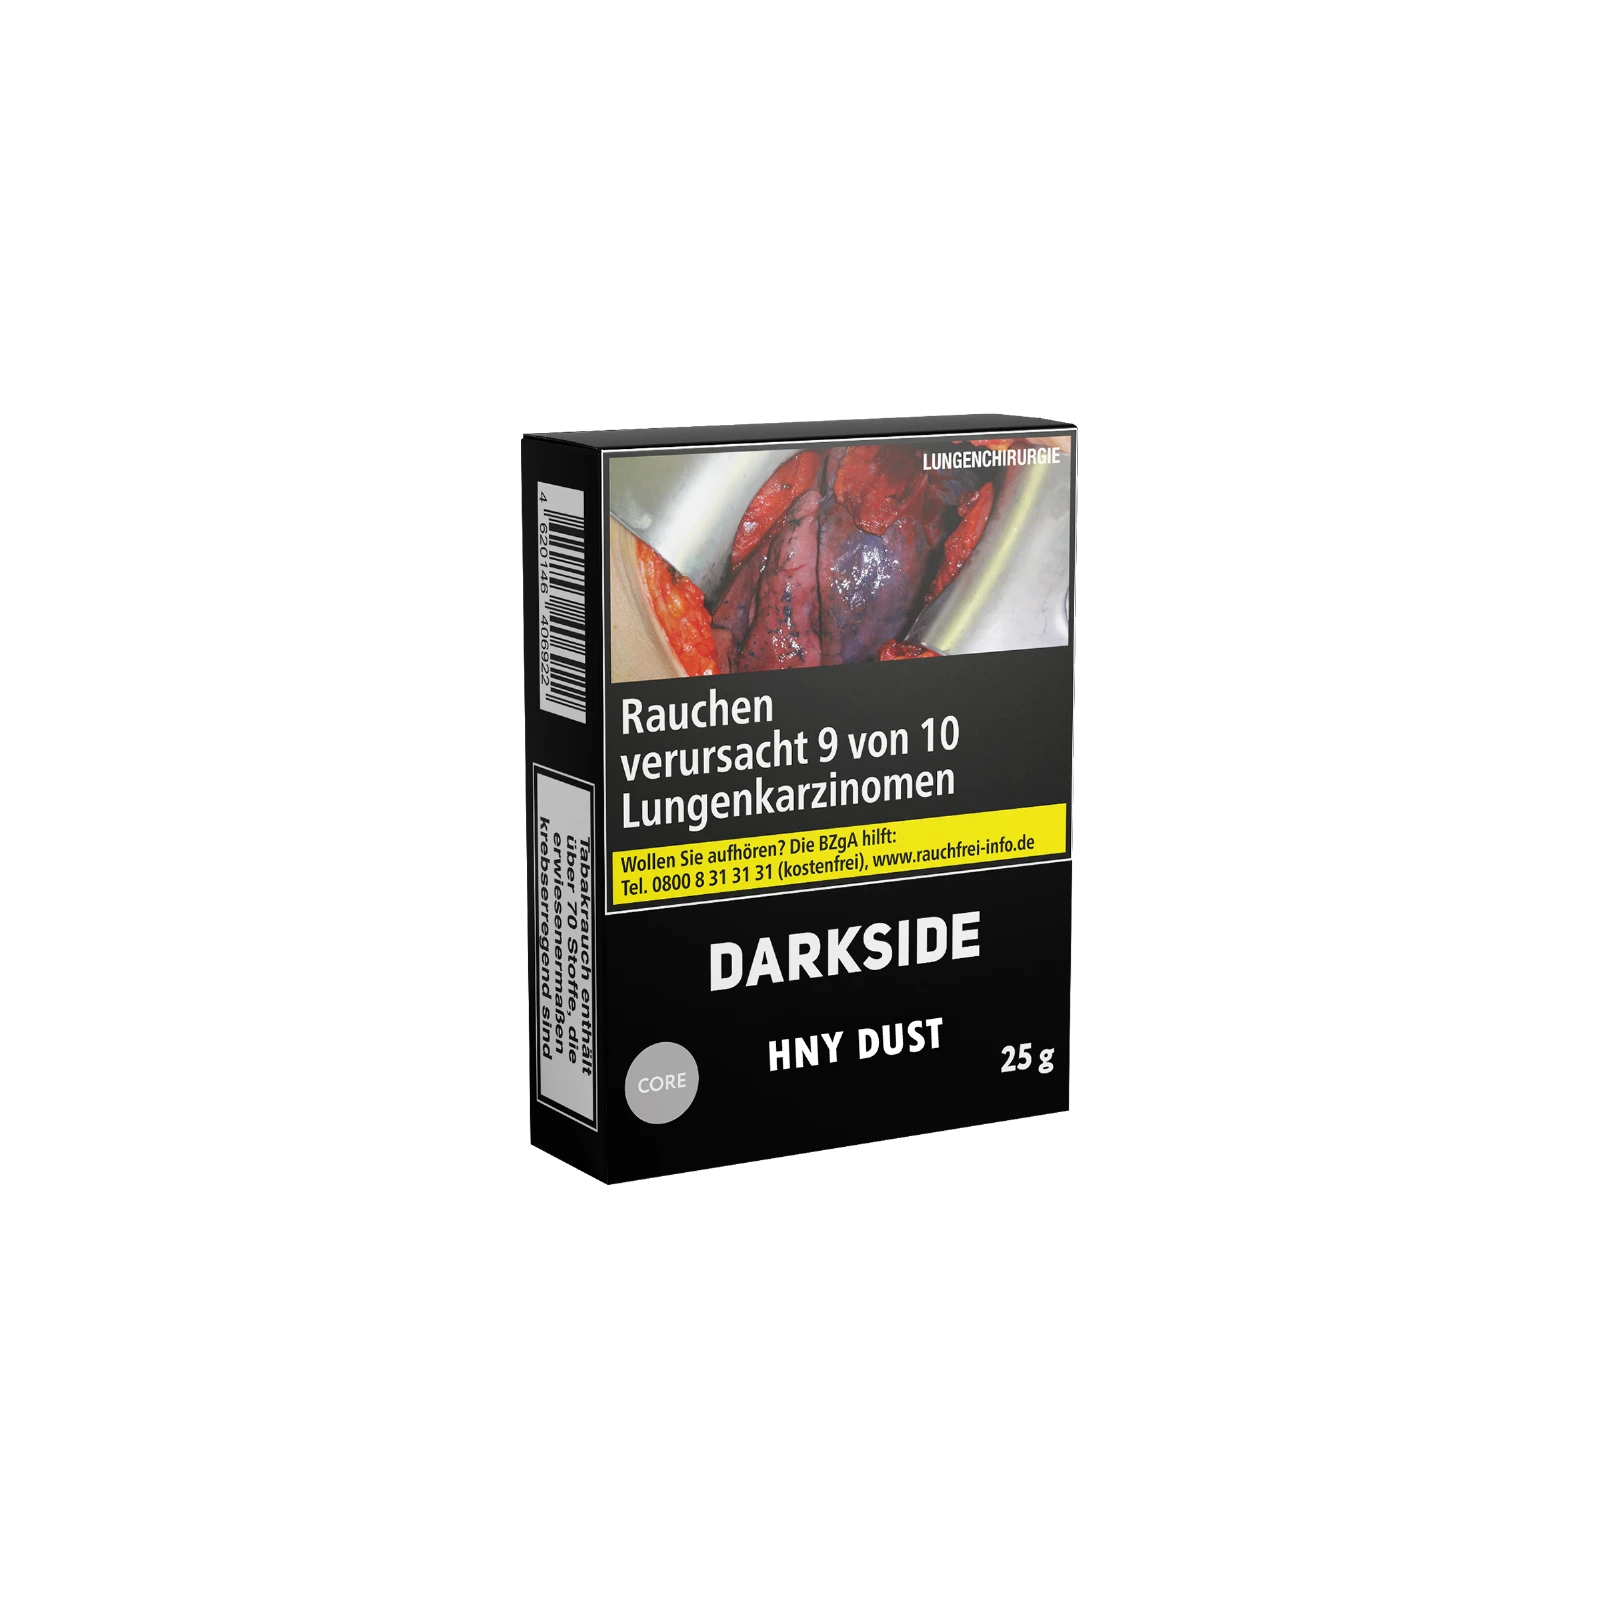 Darkside Core Hny Dust 25g Shishatabak Online bestellen